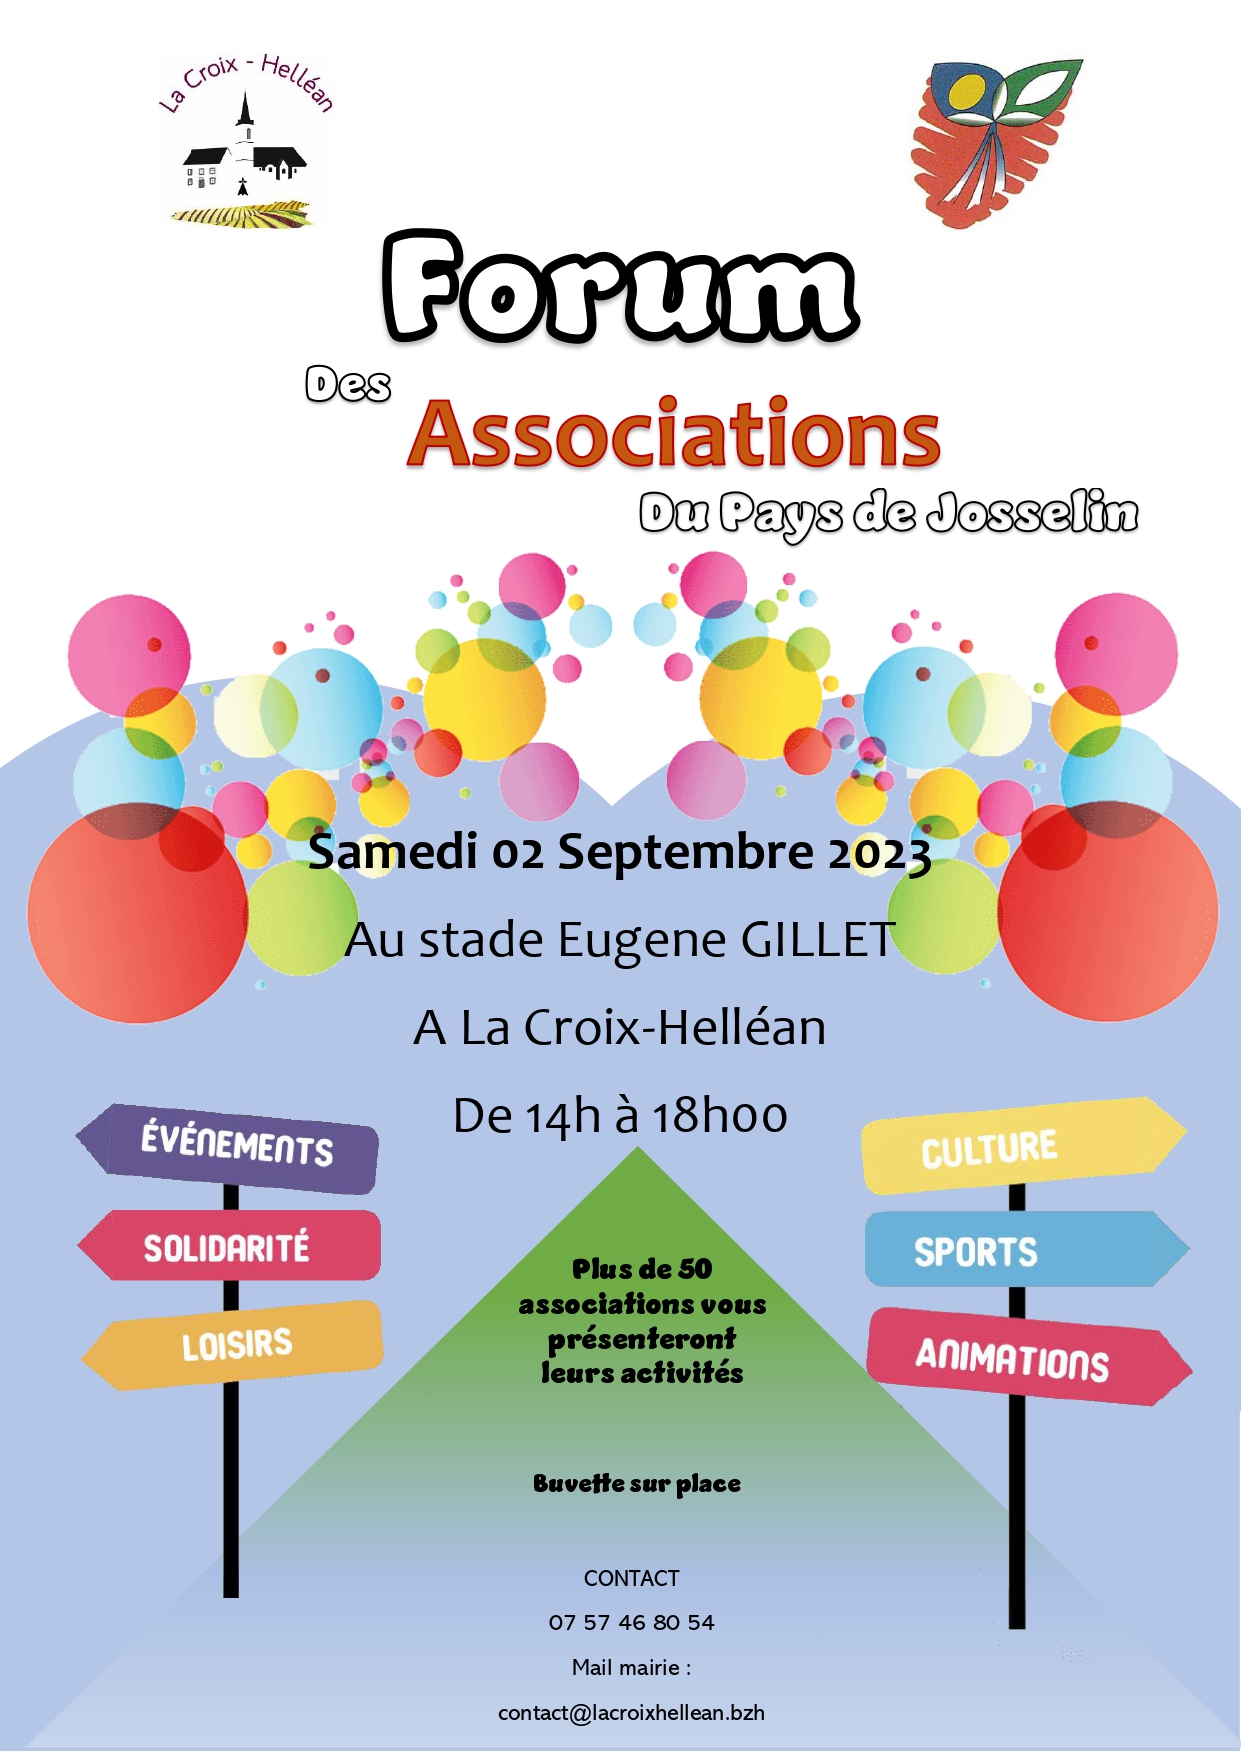 Forum des associations du pays de Josselin